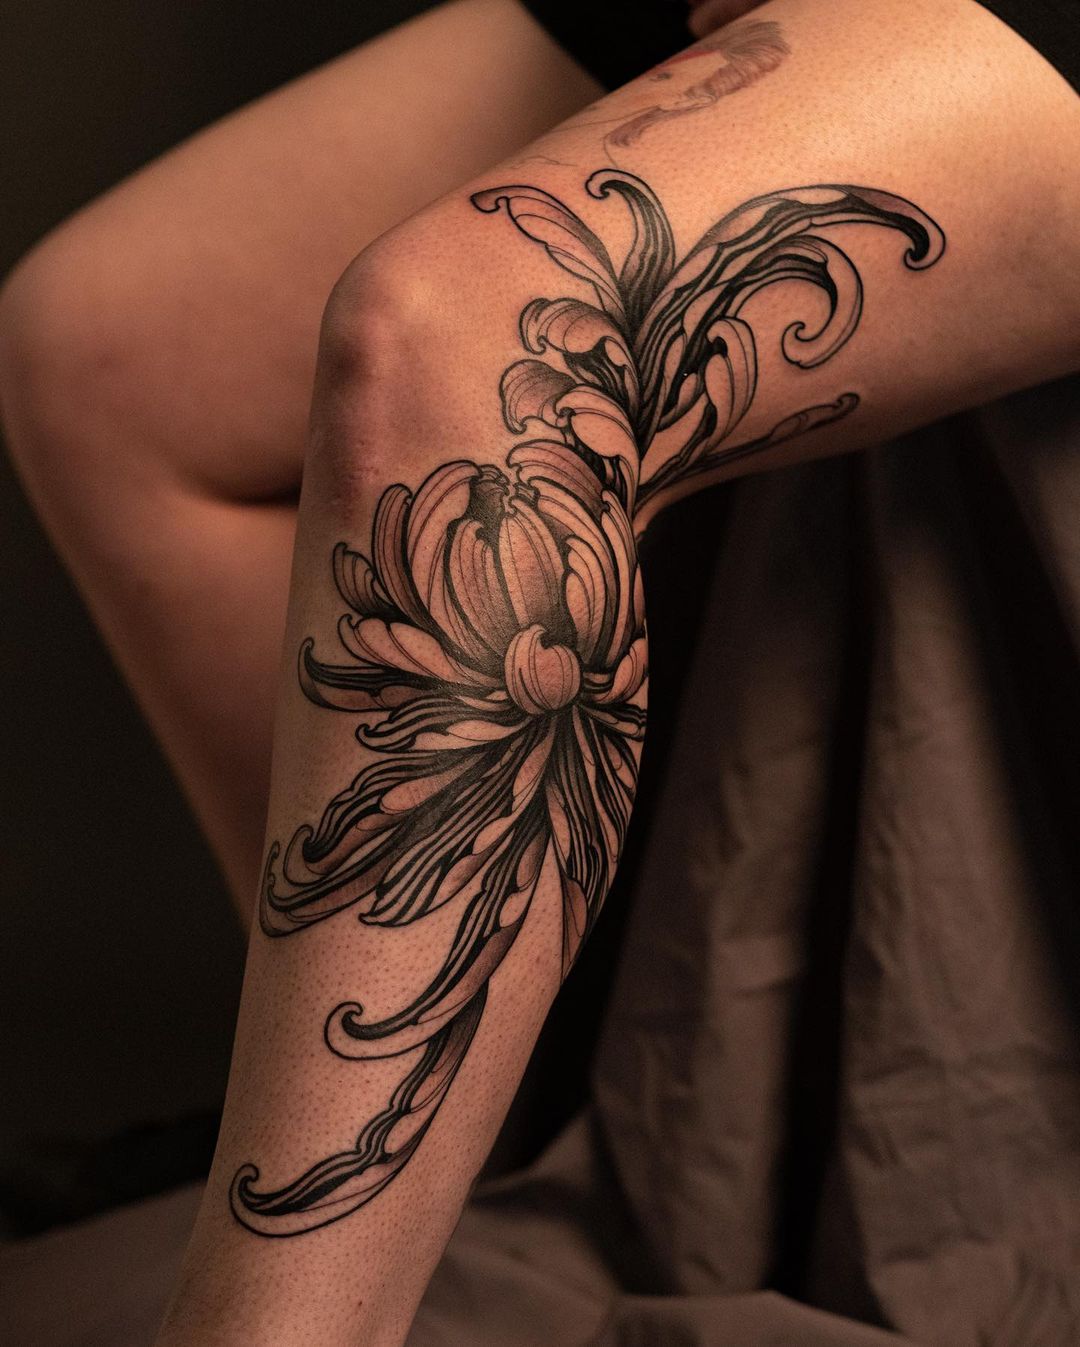 Chrysanthemum Knee Tattoo | Chrysanthemum tattoo, Knee tattoo, Tattoo styles